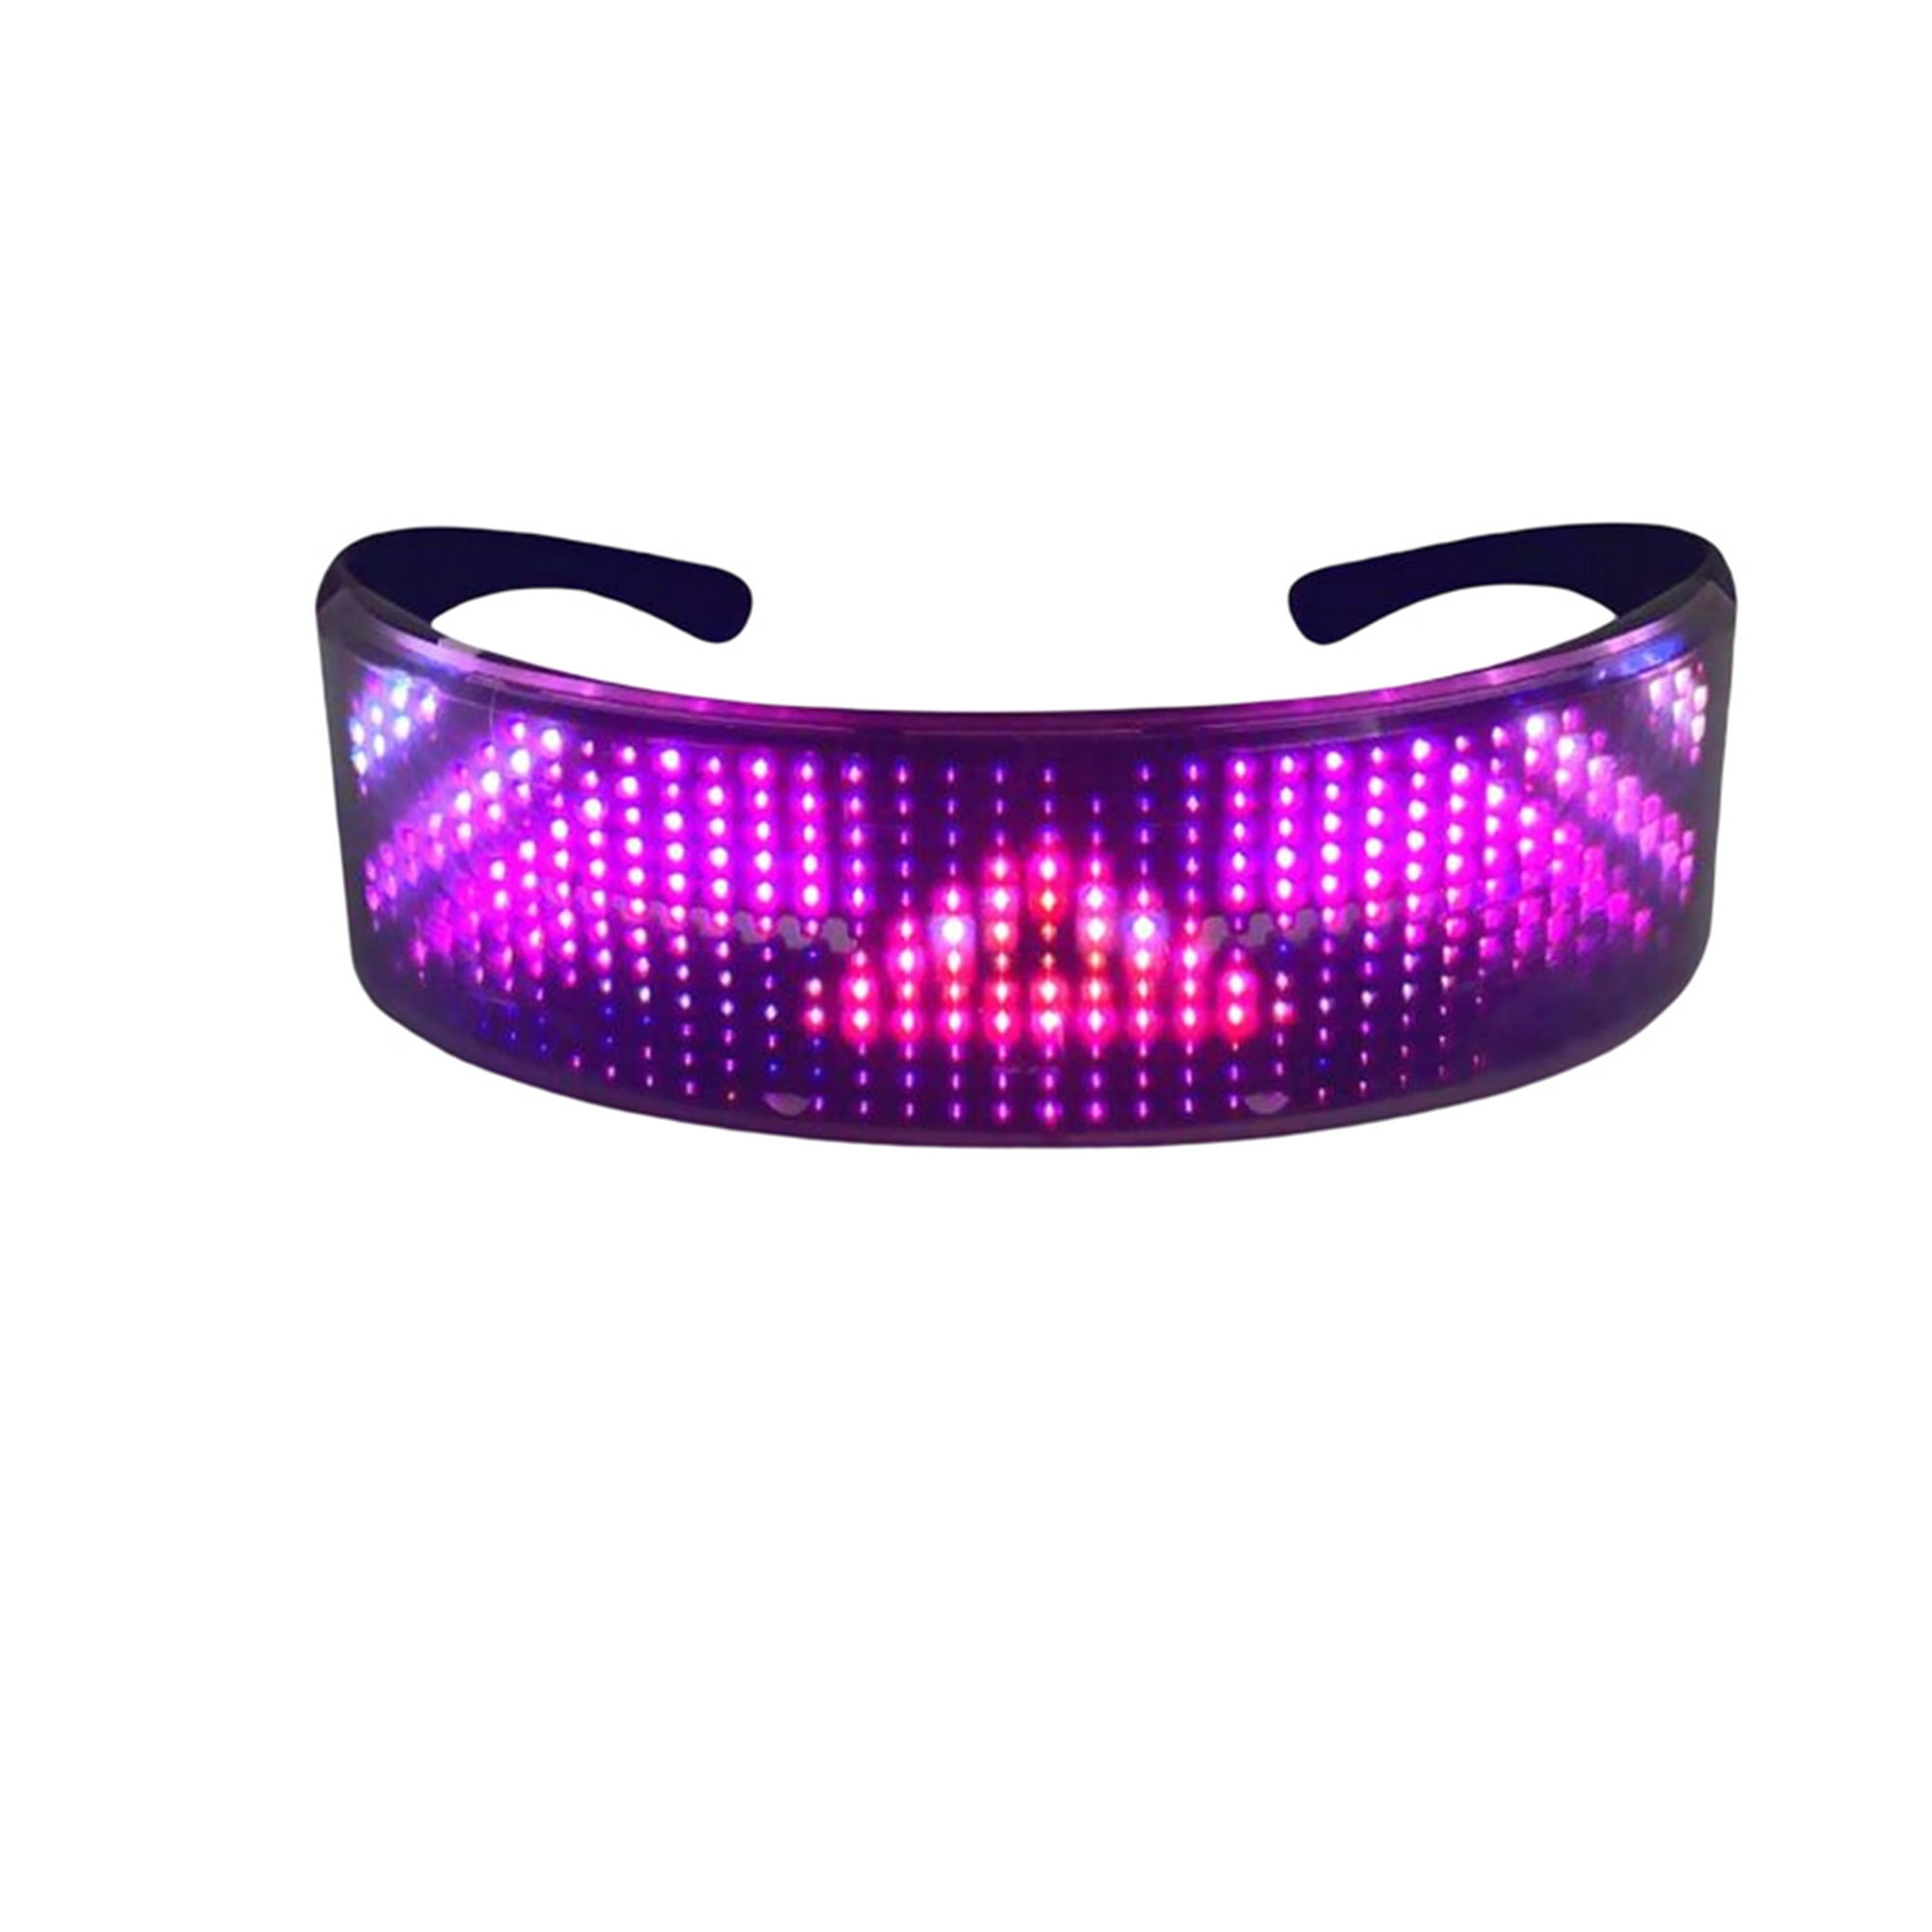 Gafas LED luminosas compatibles con Bluetooth, Control por